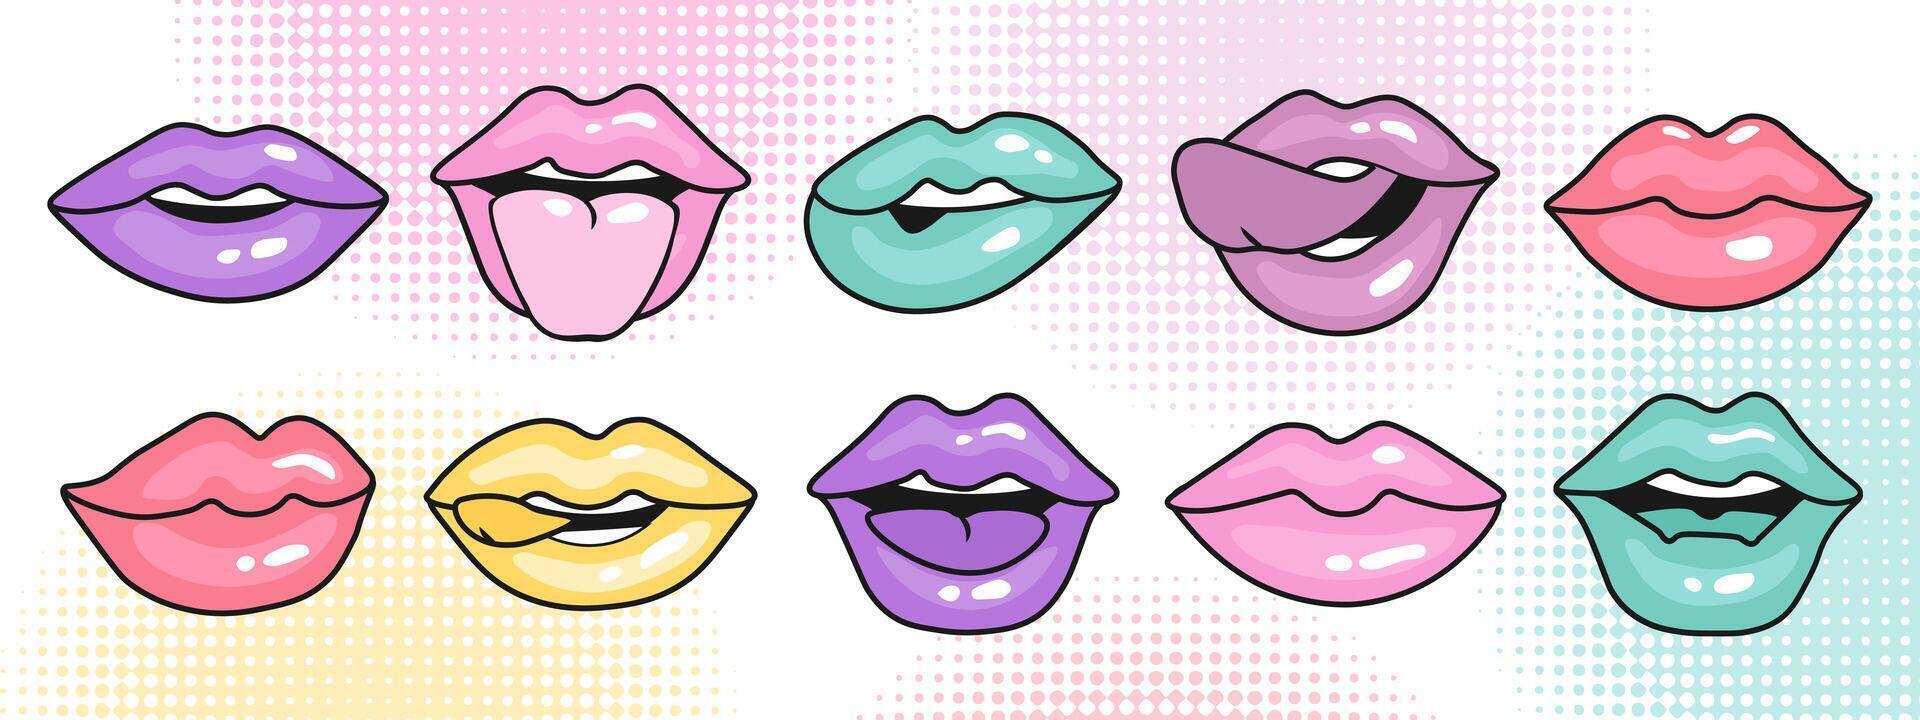 ensemble de femelle lèvres. ancien illustration de femelle bouches dans différent émotions pour autocollants, logos, impressions. vecteur